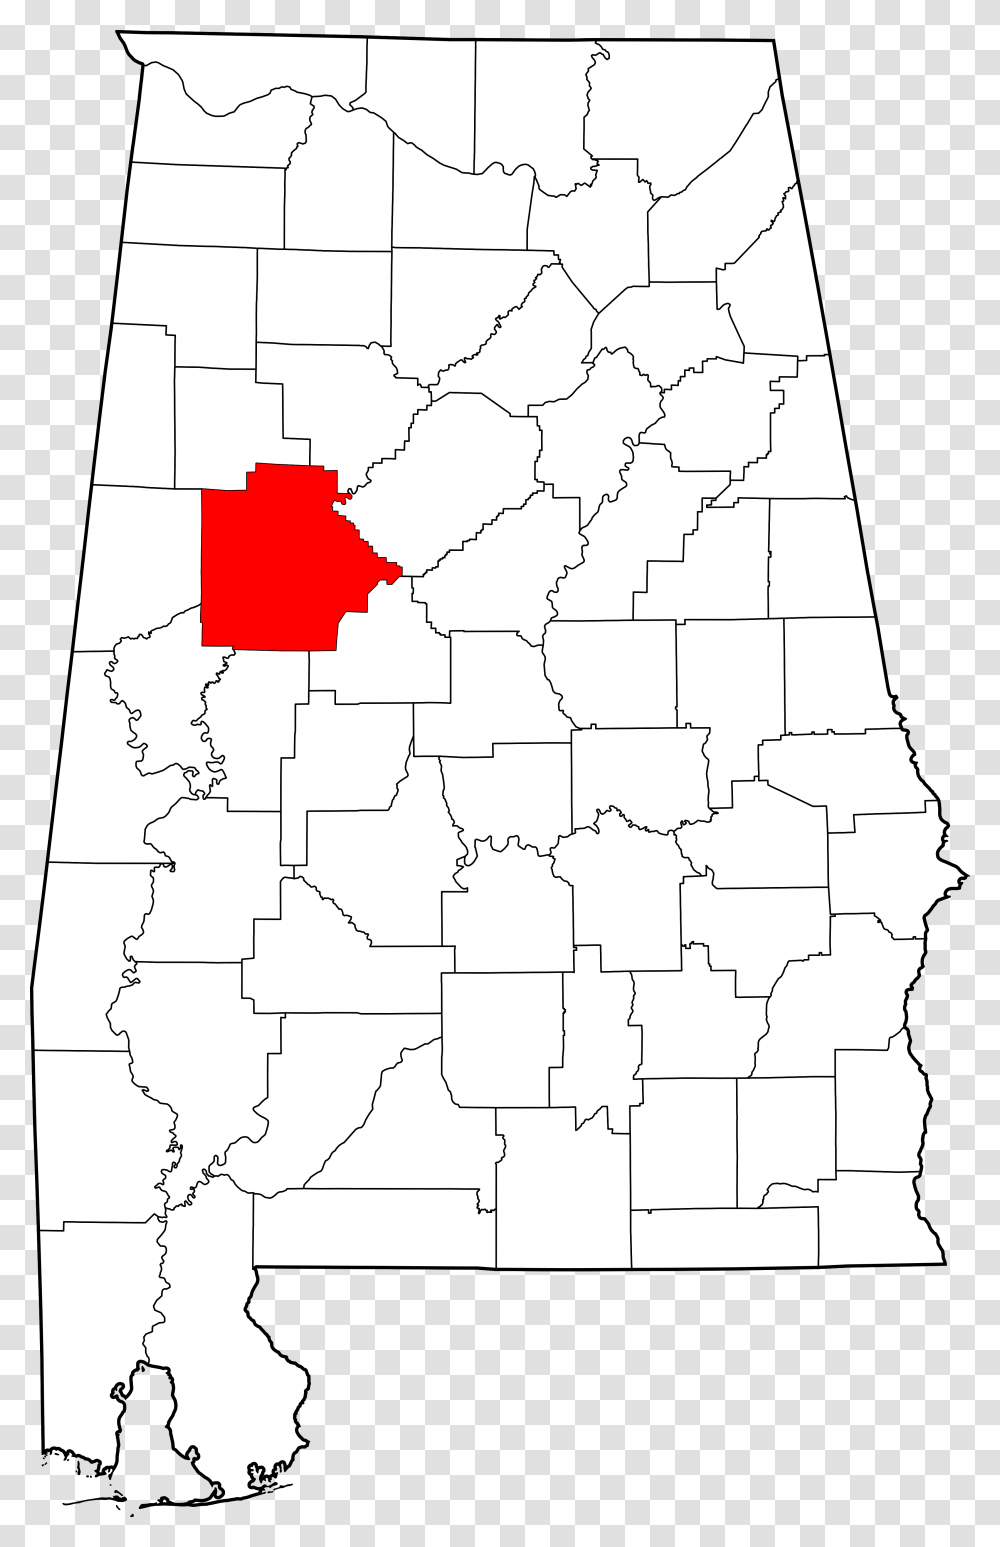 Tuscaloosa Alabama On A Map, Plot, Diagram, Plan Transparent Png